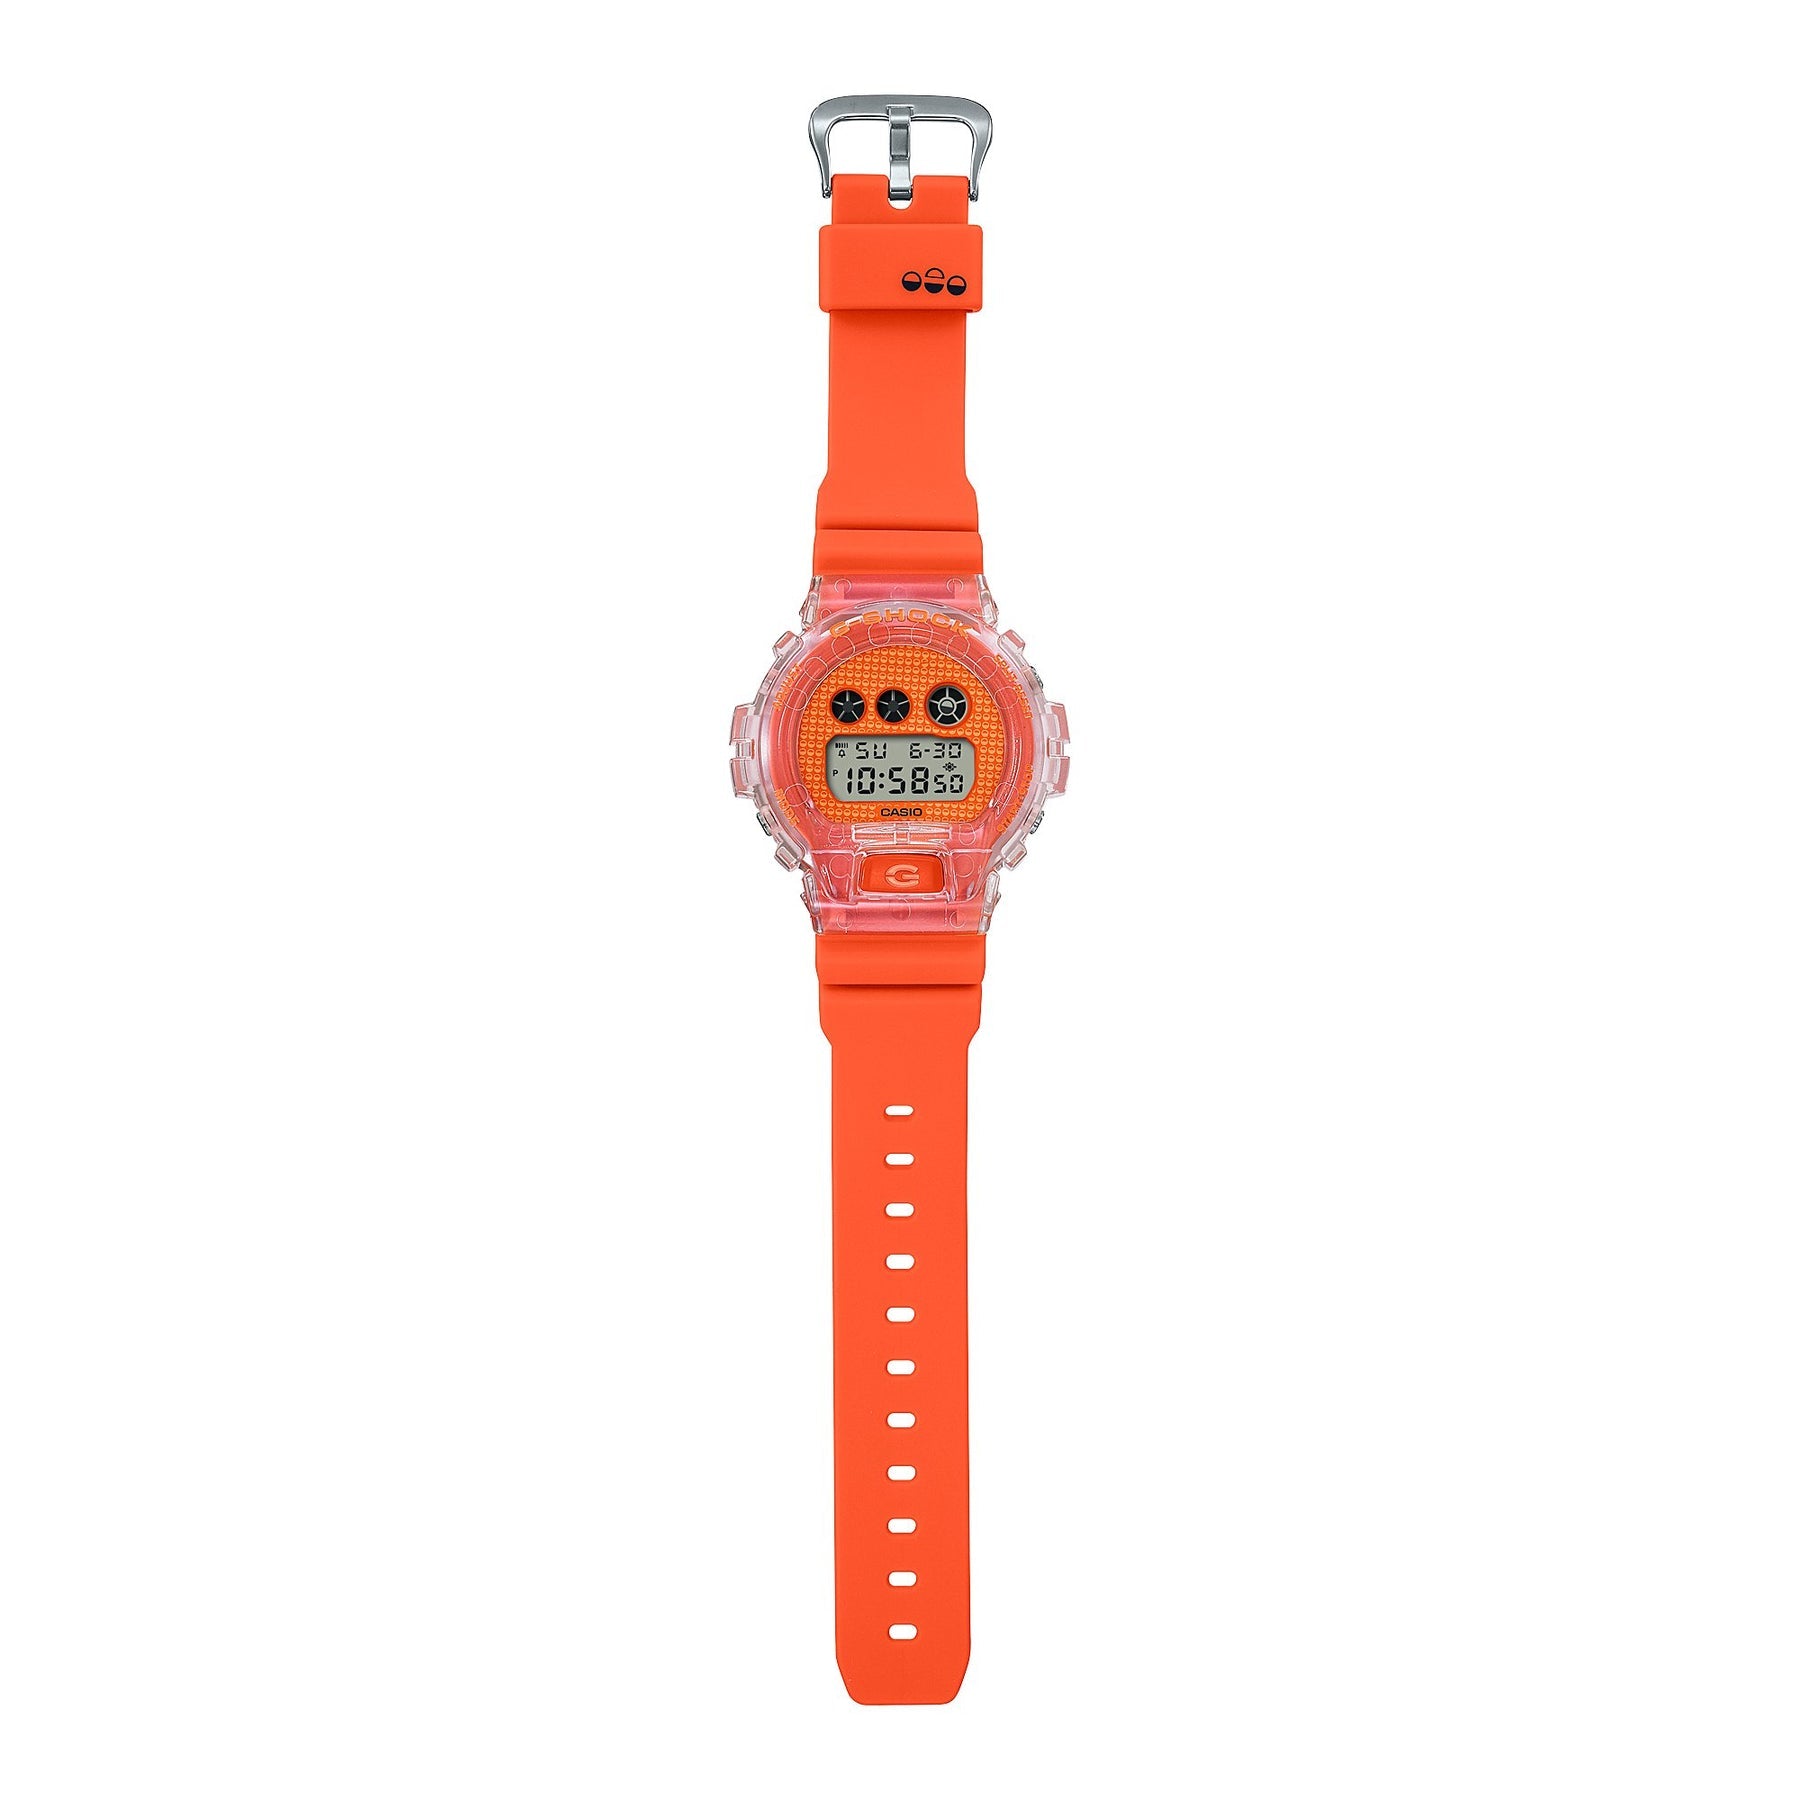 G-Shock Orange Resin Band Watch